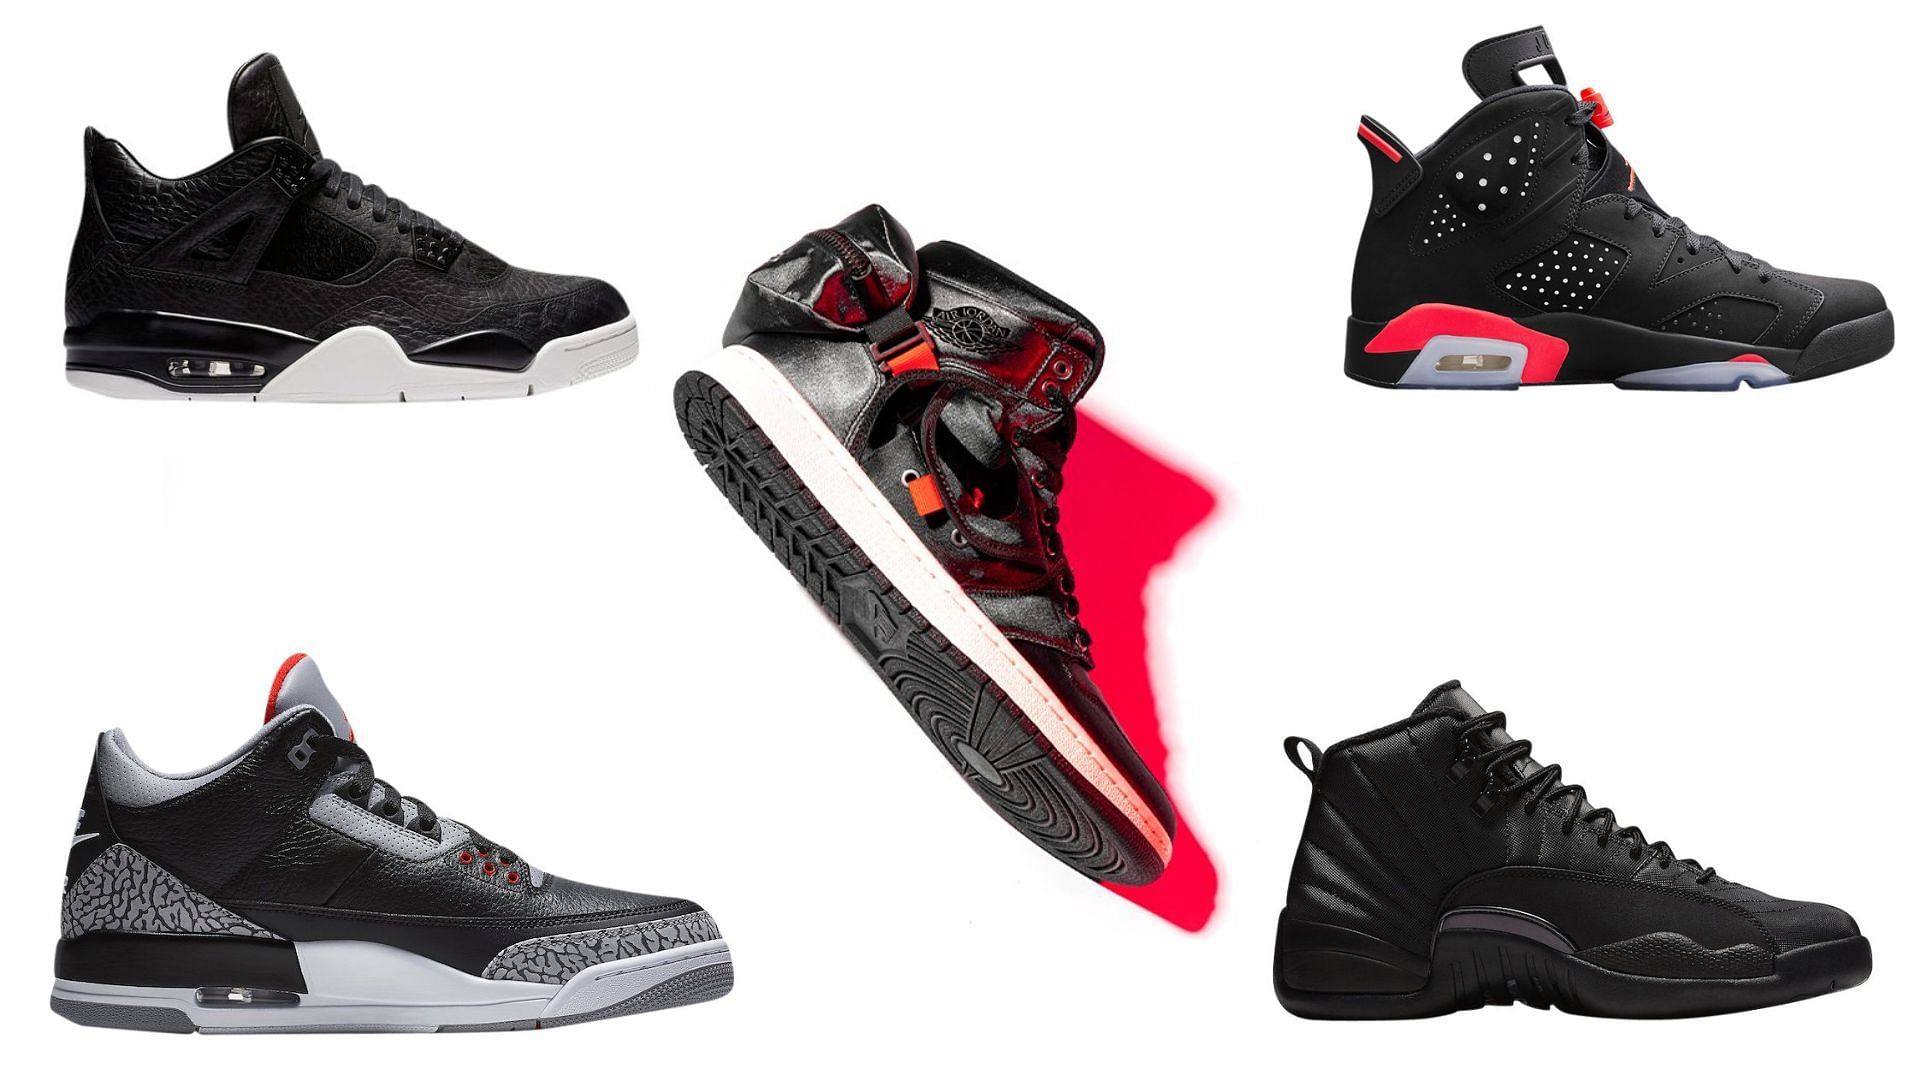 Five exciting black Air Jordans released over the years (Image via Sportskeeda)